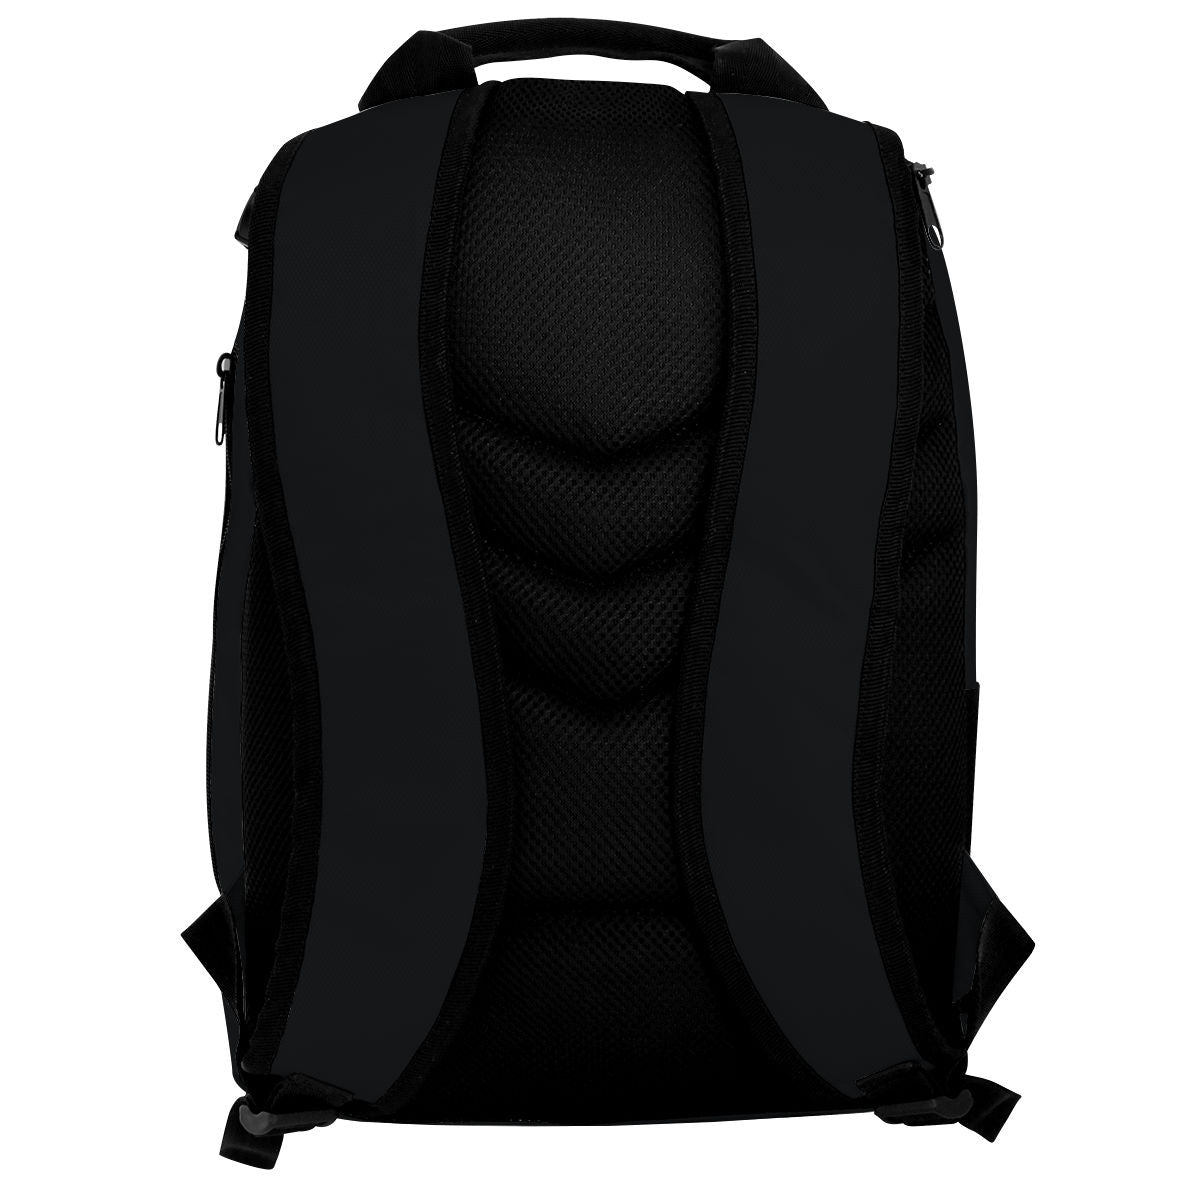 Team Bag 1 - Backpack